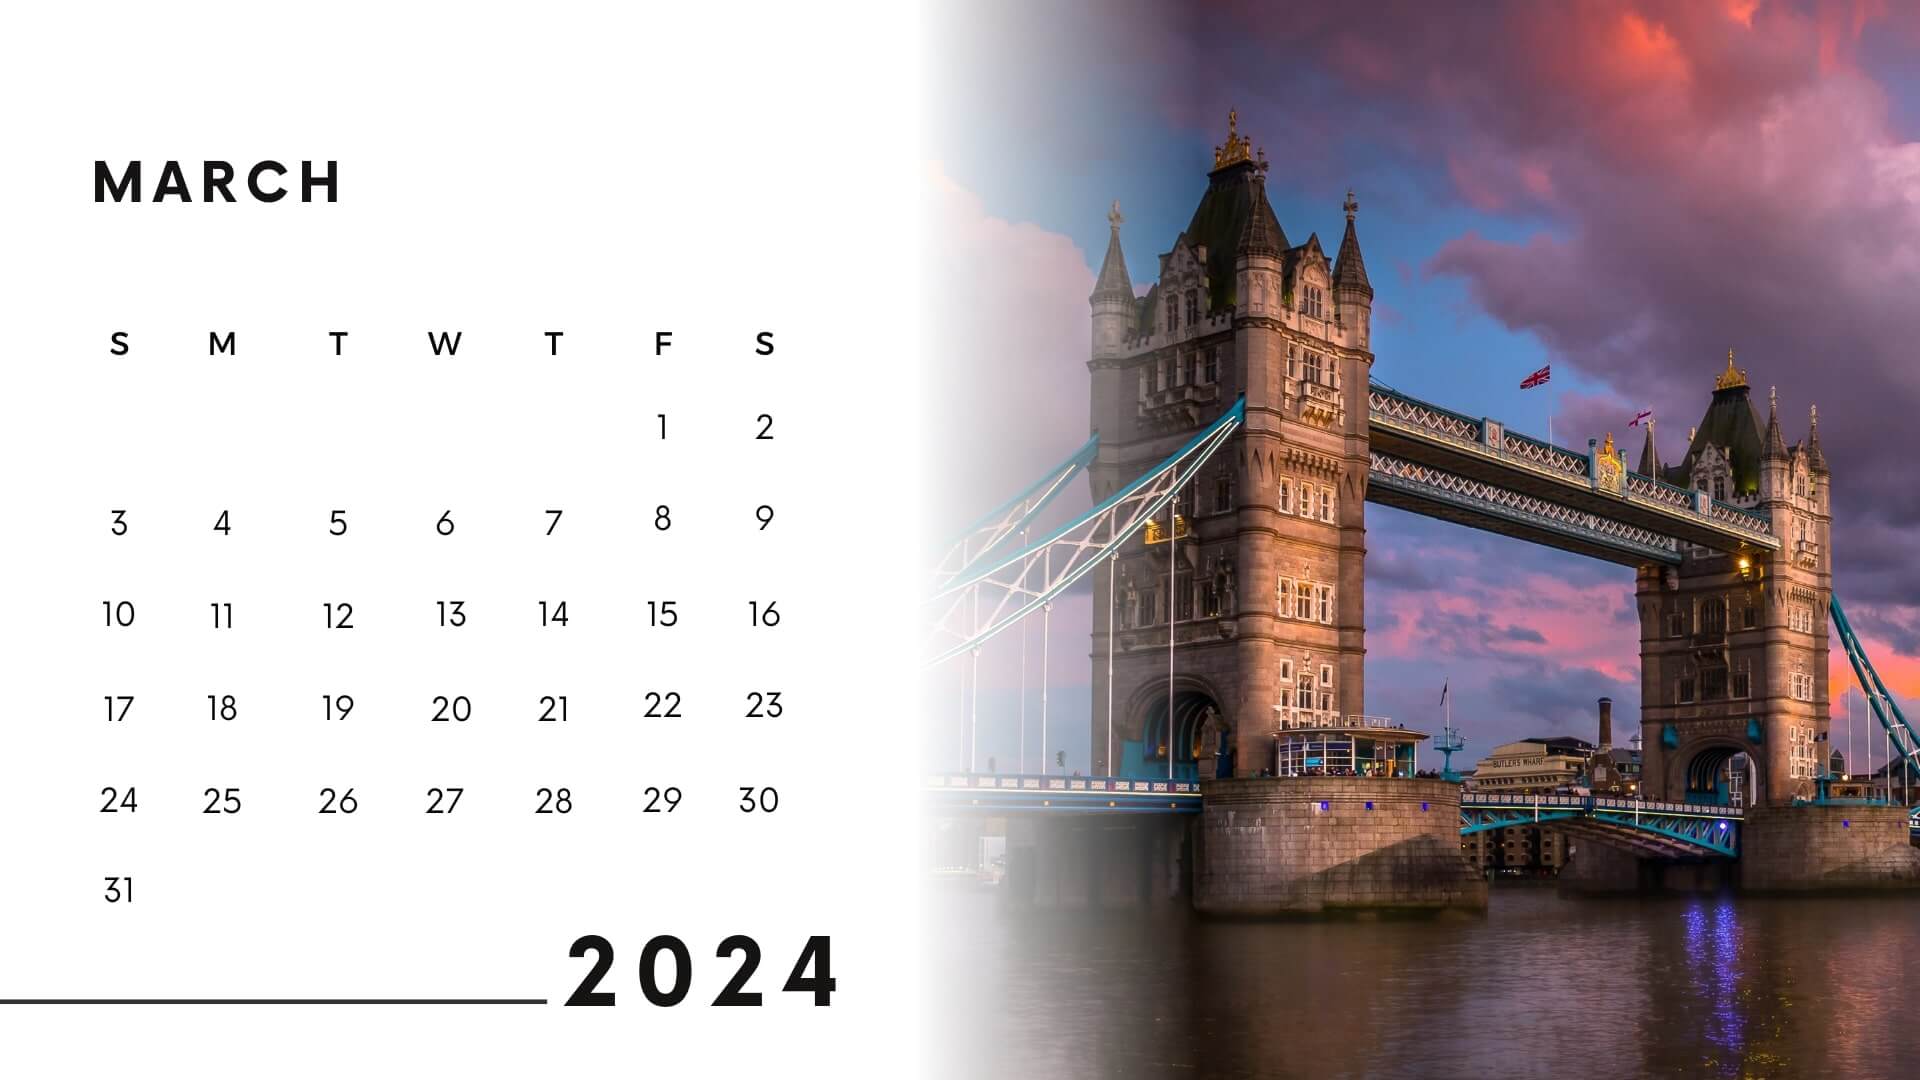 calendar 2024 march